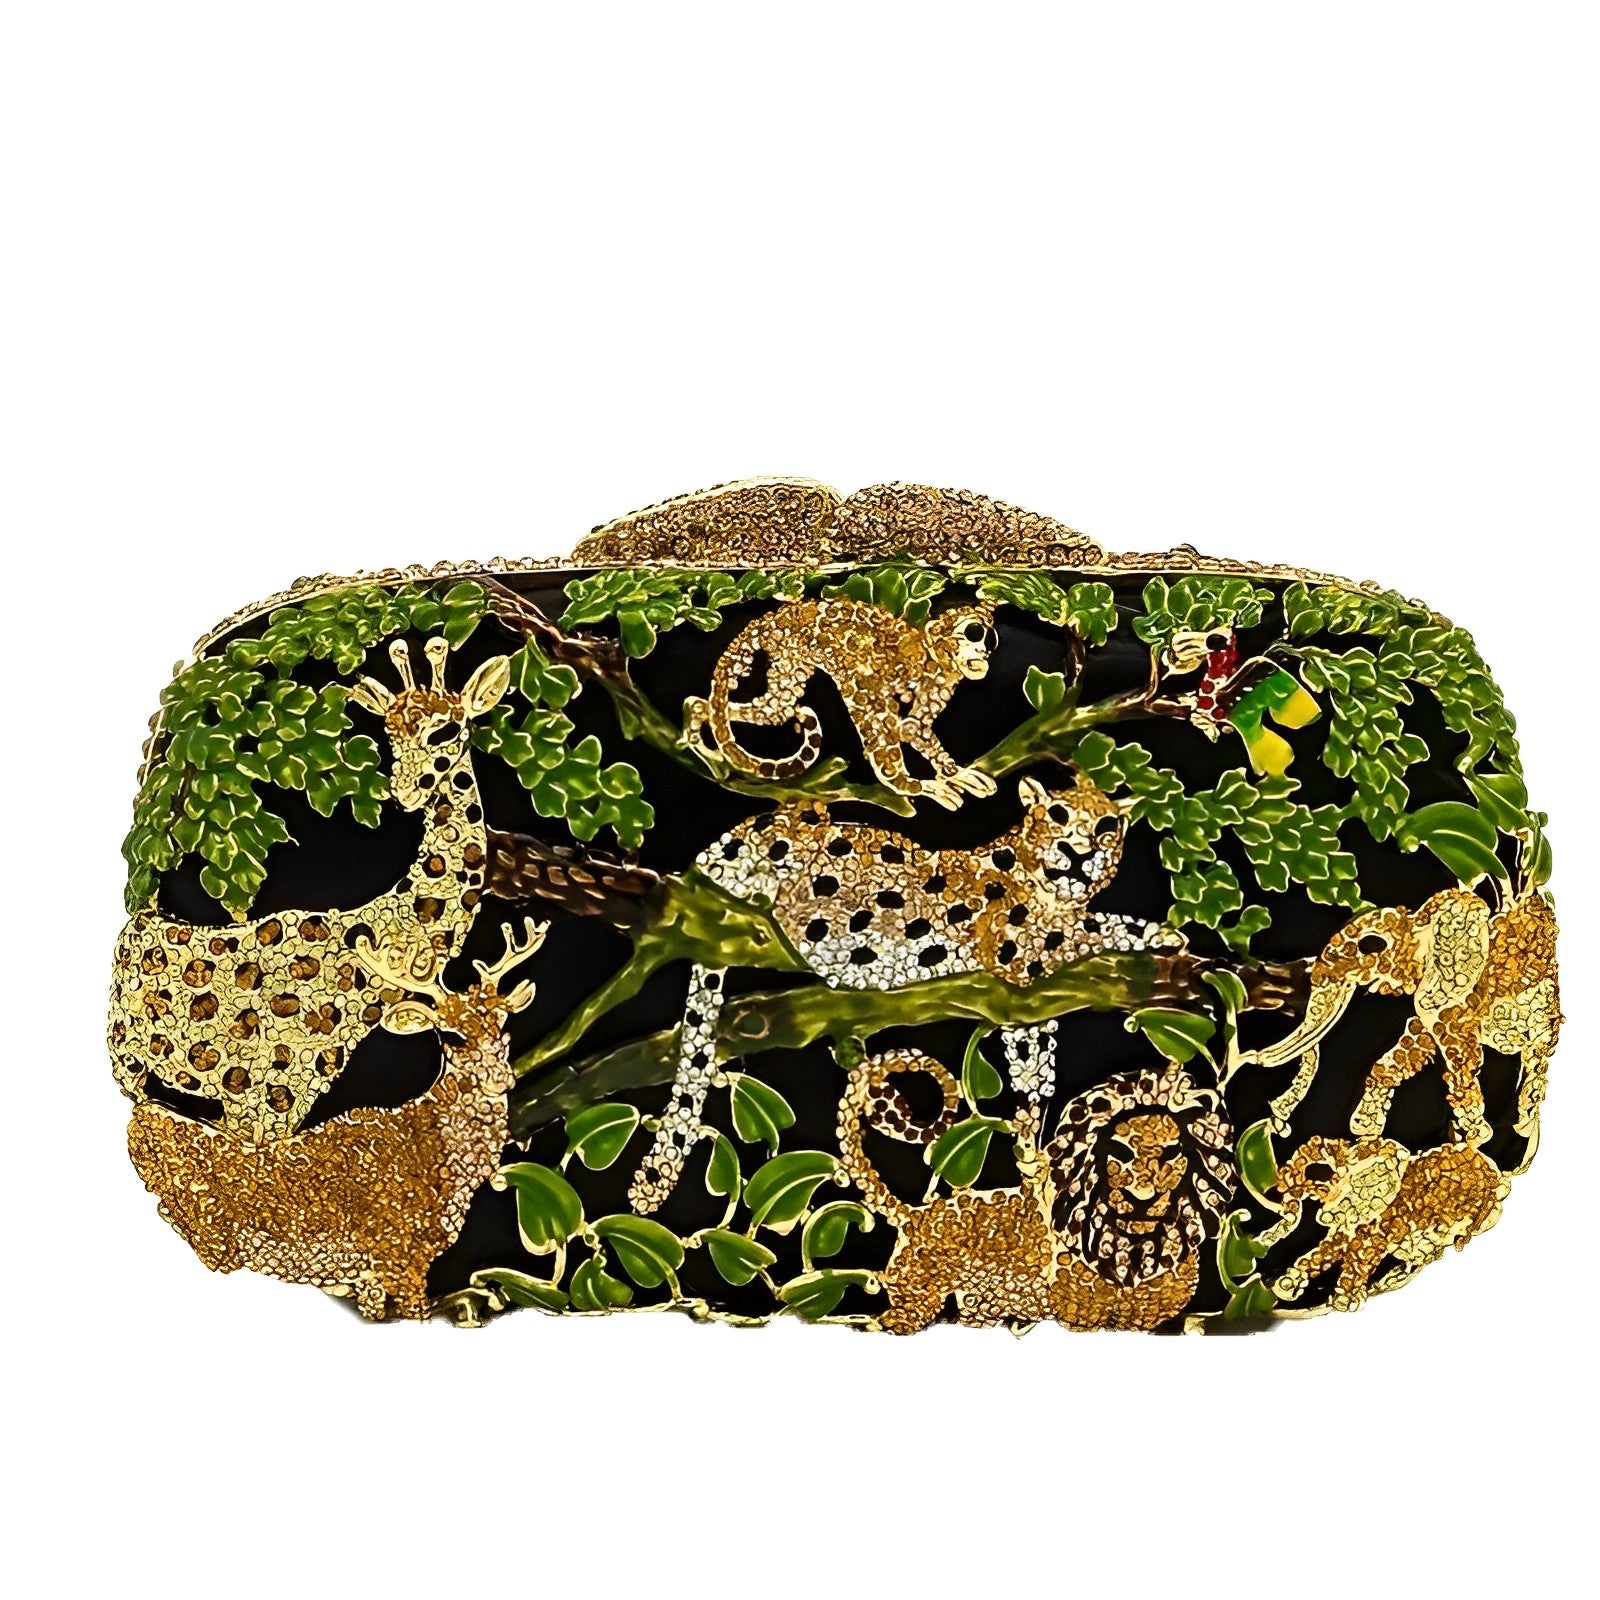 CTB Jungle Safari Handmade Shoulder/Clutch Bag